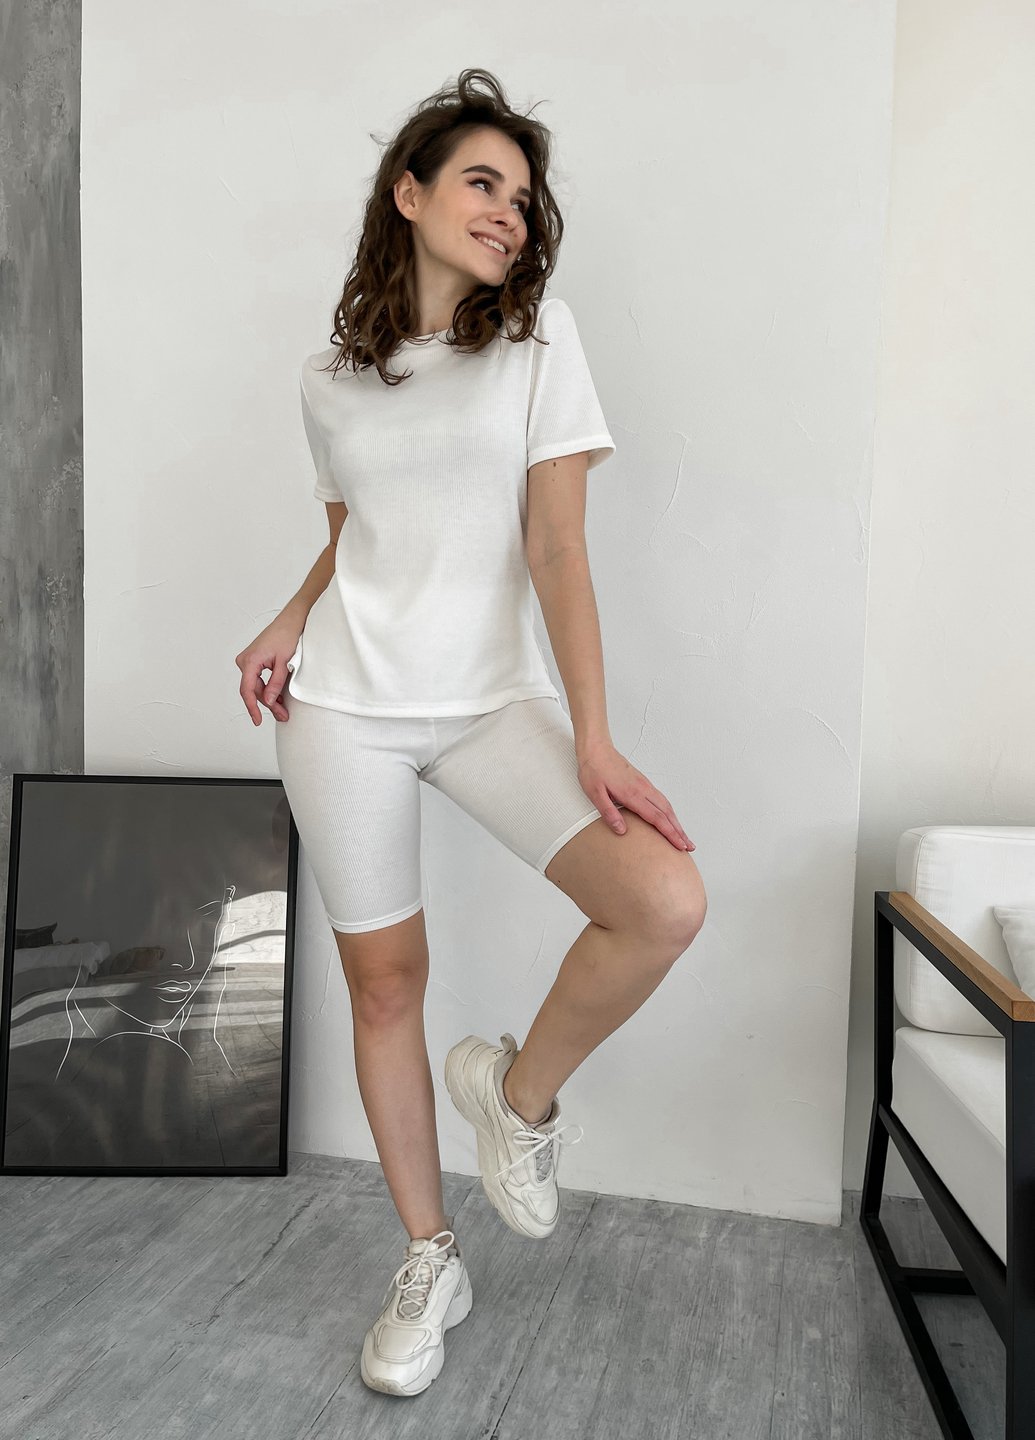 Купить Костюм женский в рубчик футболка с велосипедками белый Merlini Виваро 100000486, размер XS-M (40-44) в интернет-магазине